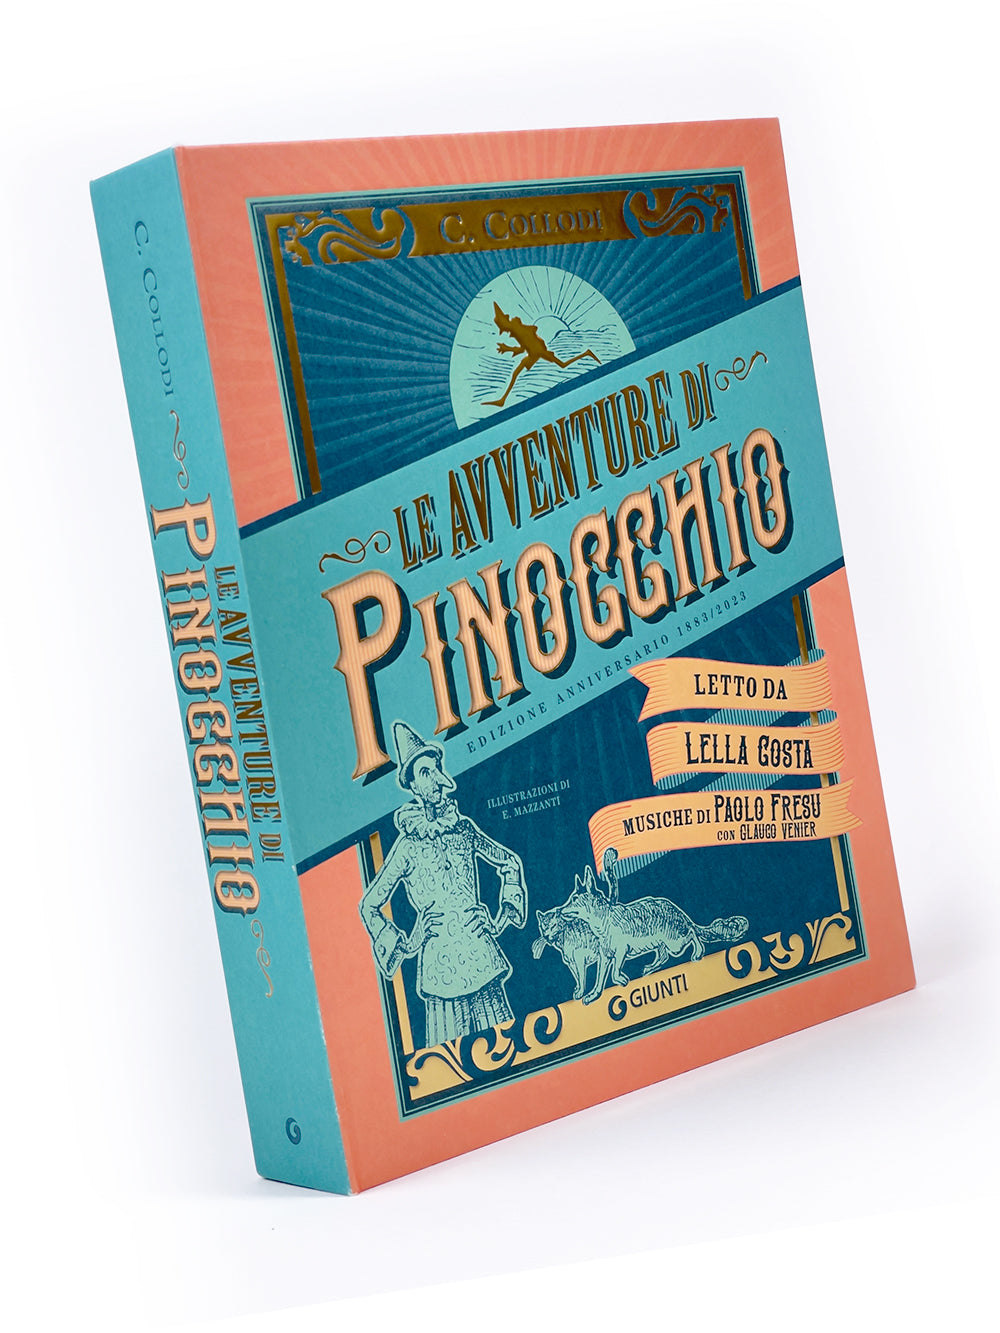 Le avventure di Pinocchio. Edizione Anniversario 1883-2023. Letto da Lella Costa. Musiche di Paolo Fresu con Glauco Venier